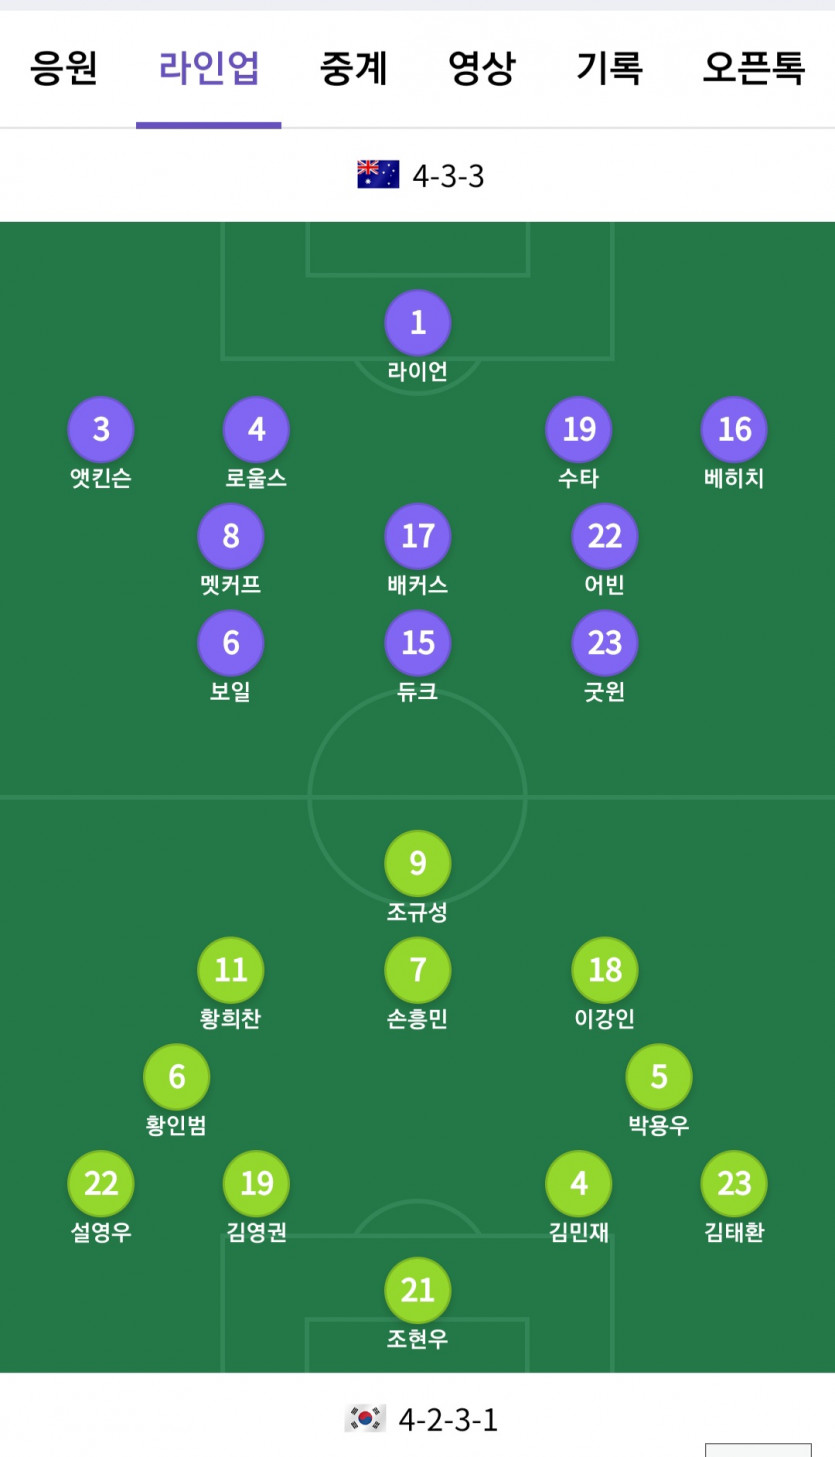 한국 vs 캥거루 라인업 !